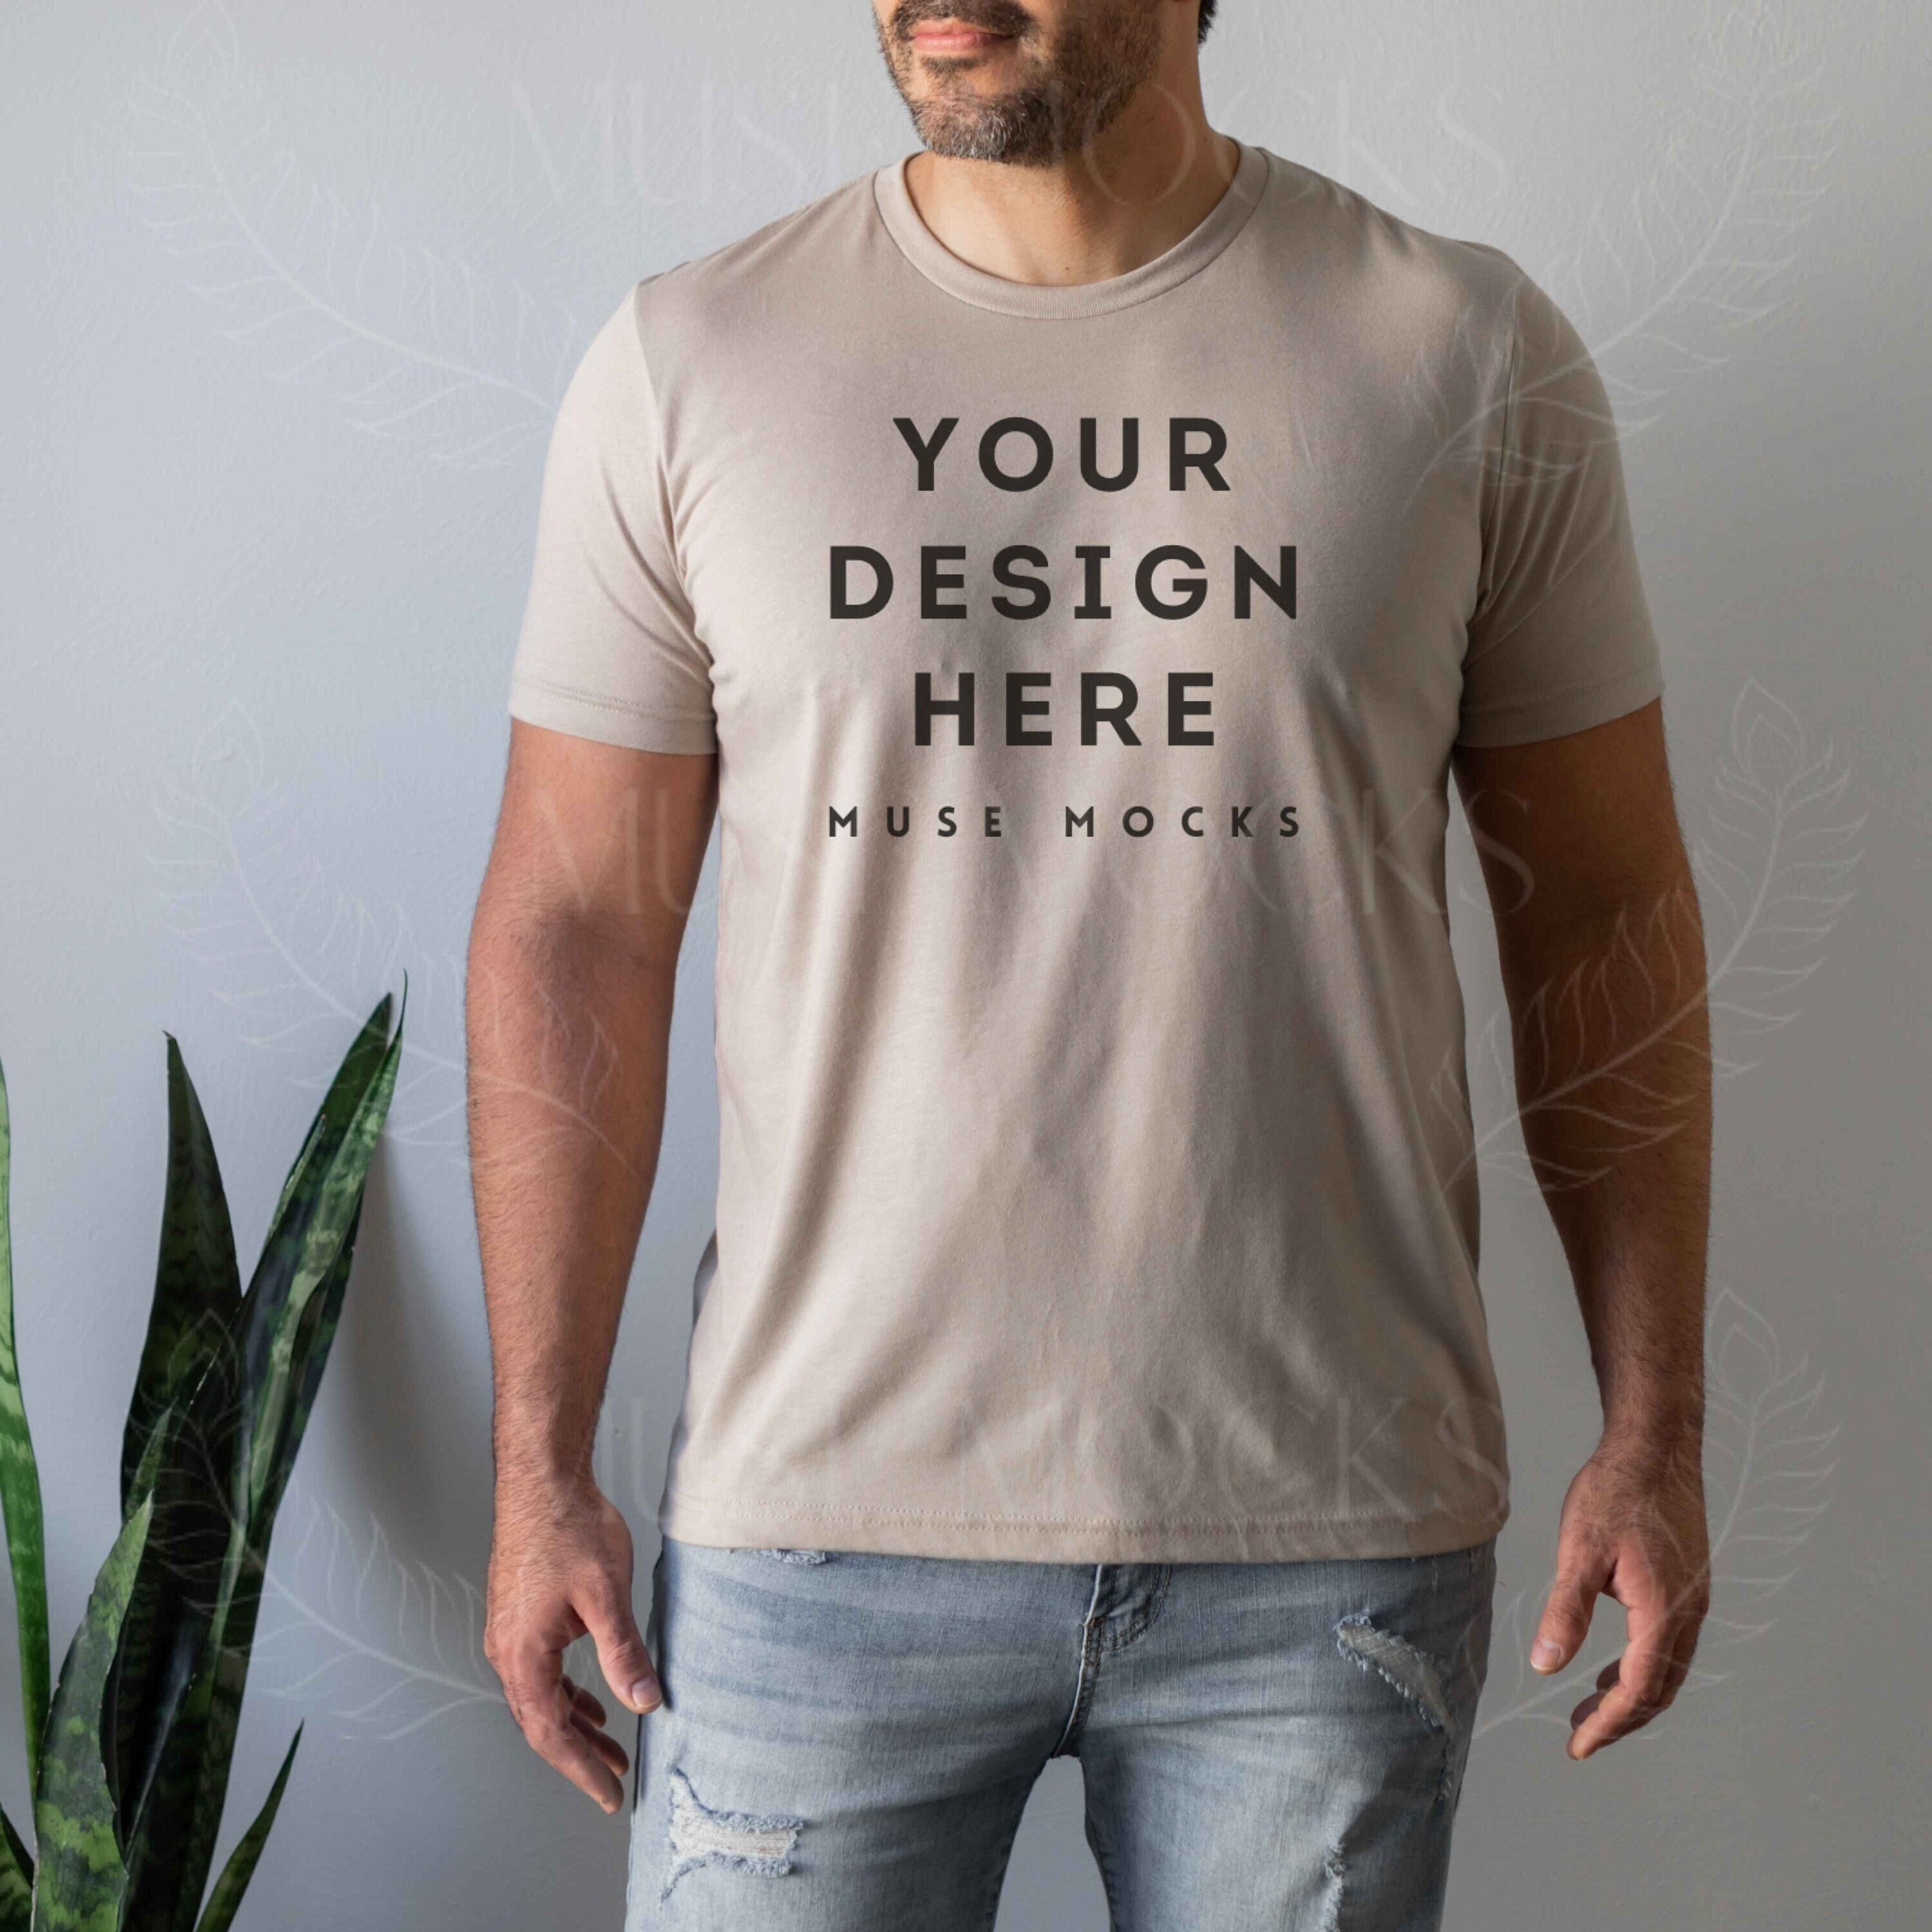 CÉLINE Beige T-Shirts for Men